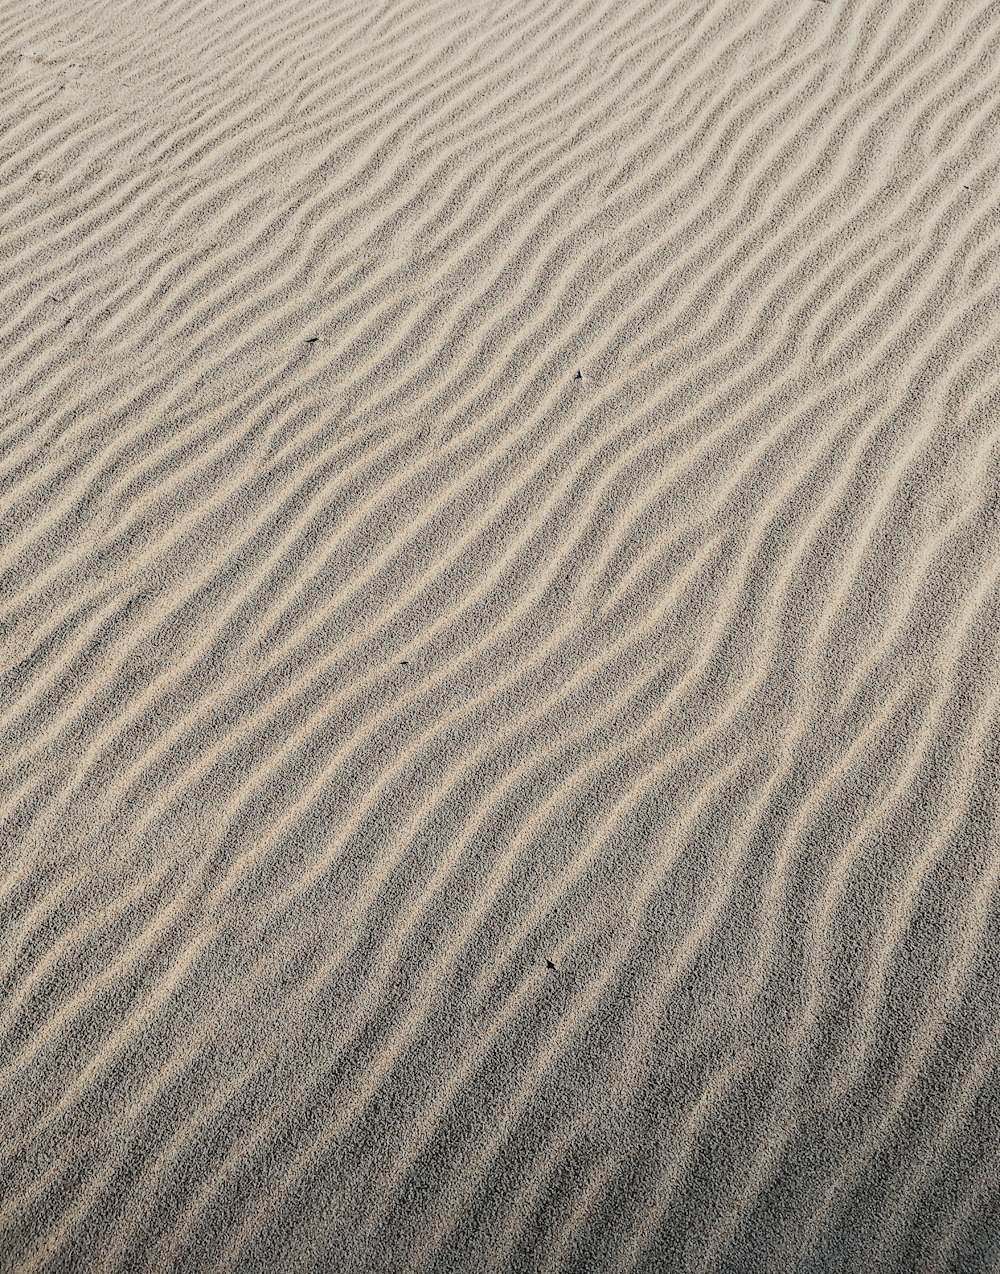 areia marrom